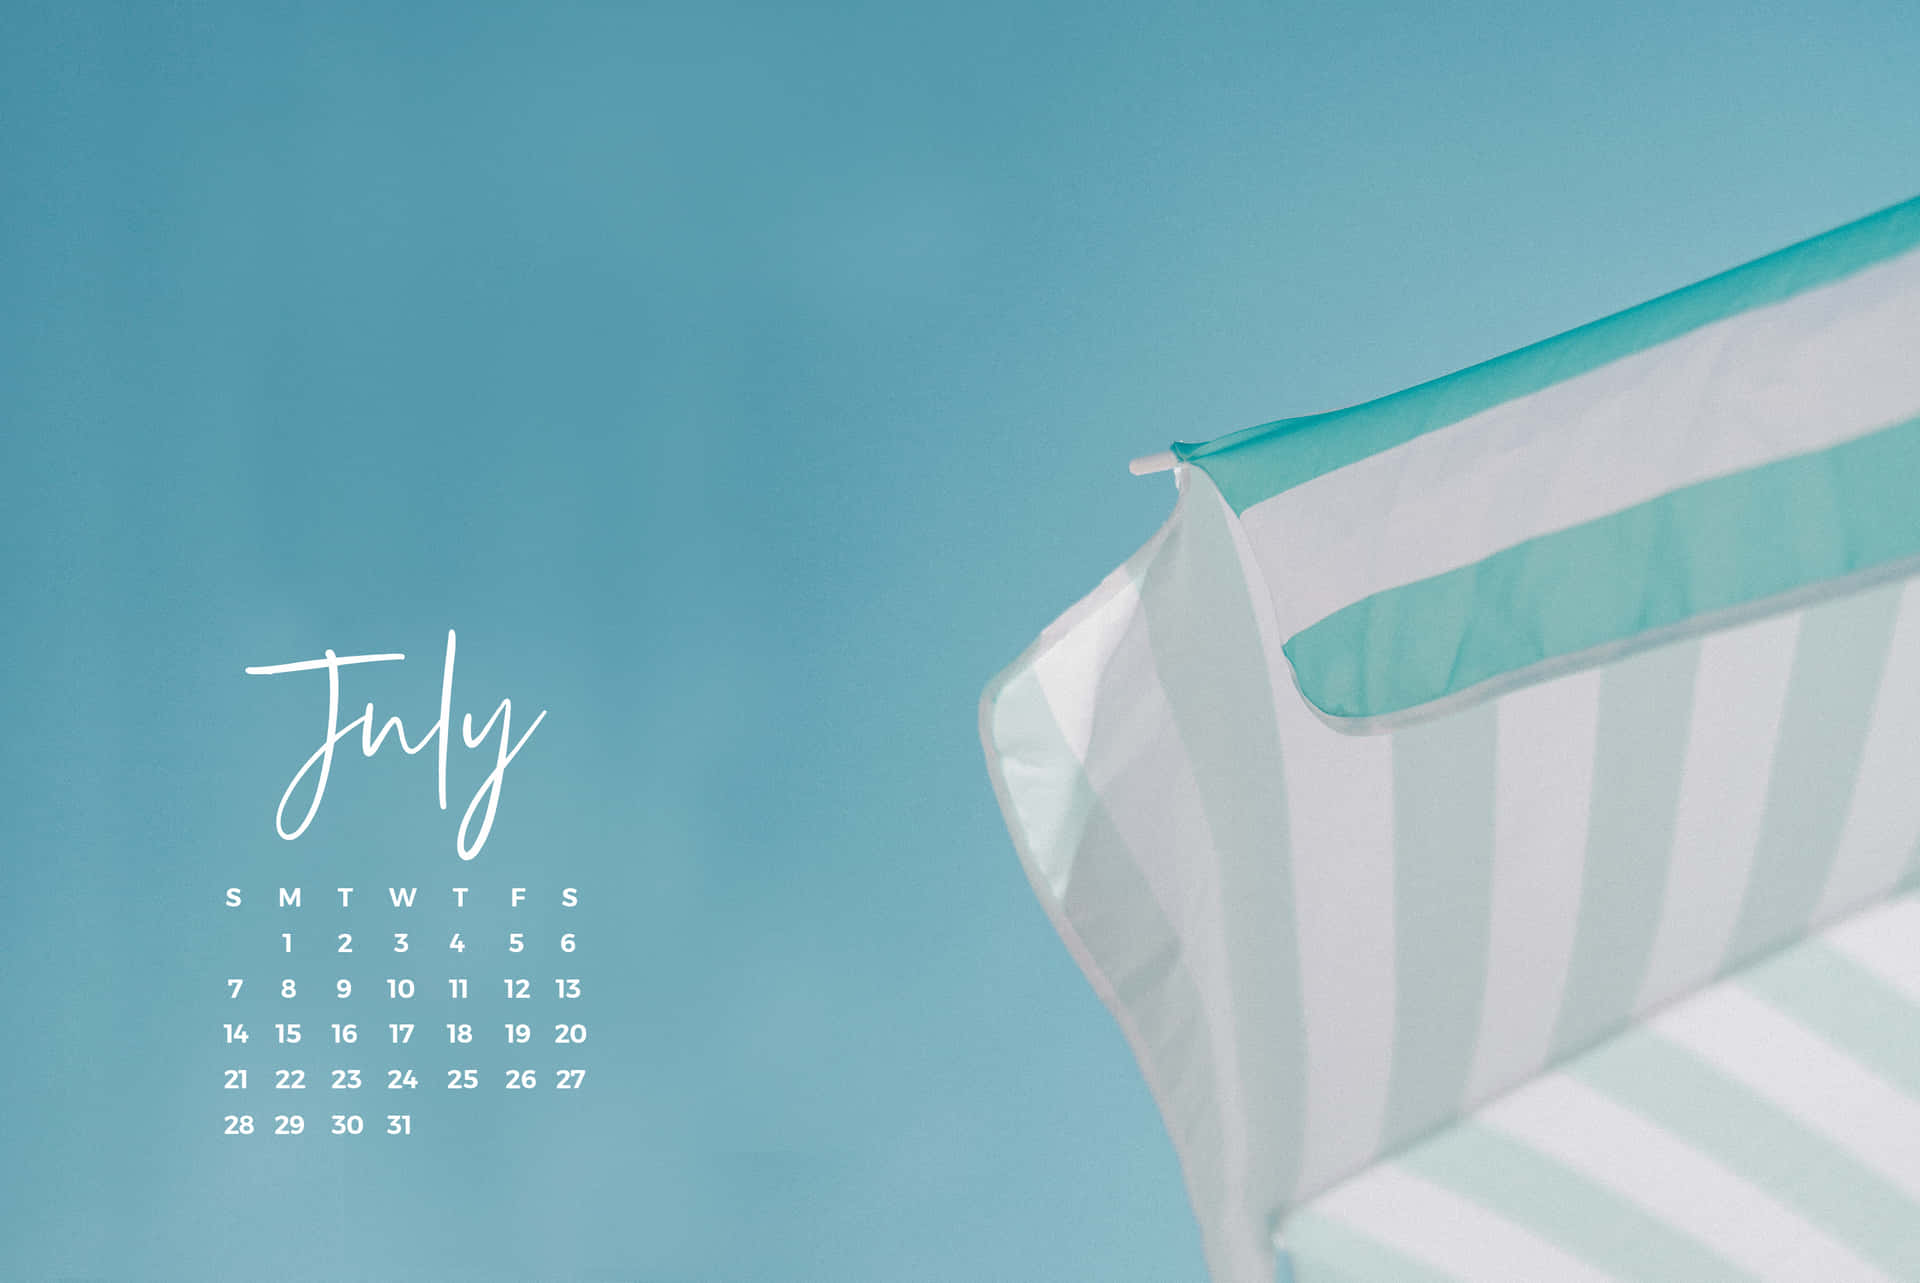 July Summer Beach Umbrella Calendar Desktop Wallpaper Wallpaper